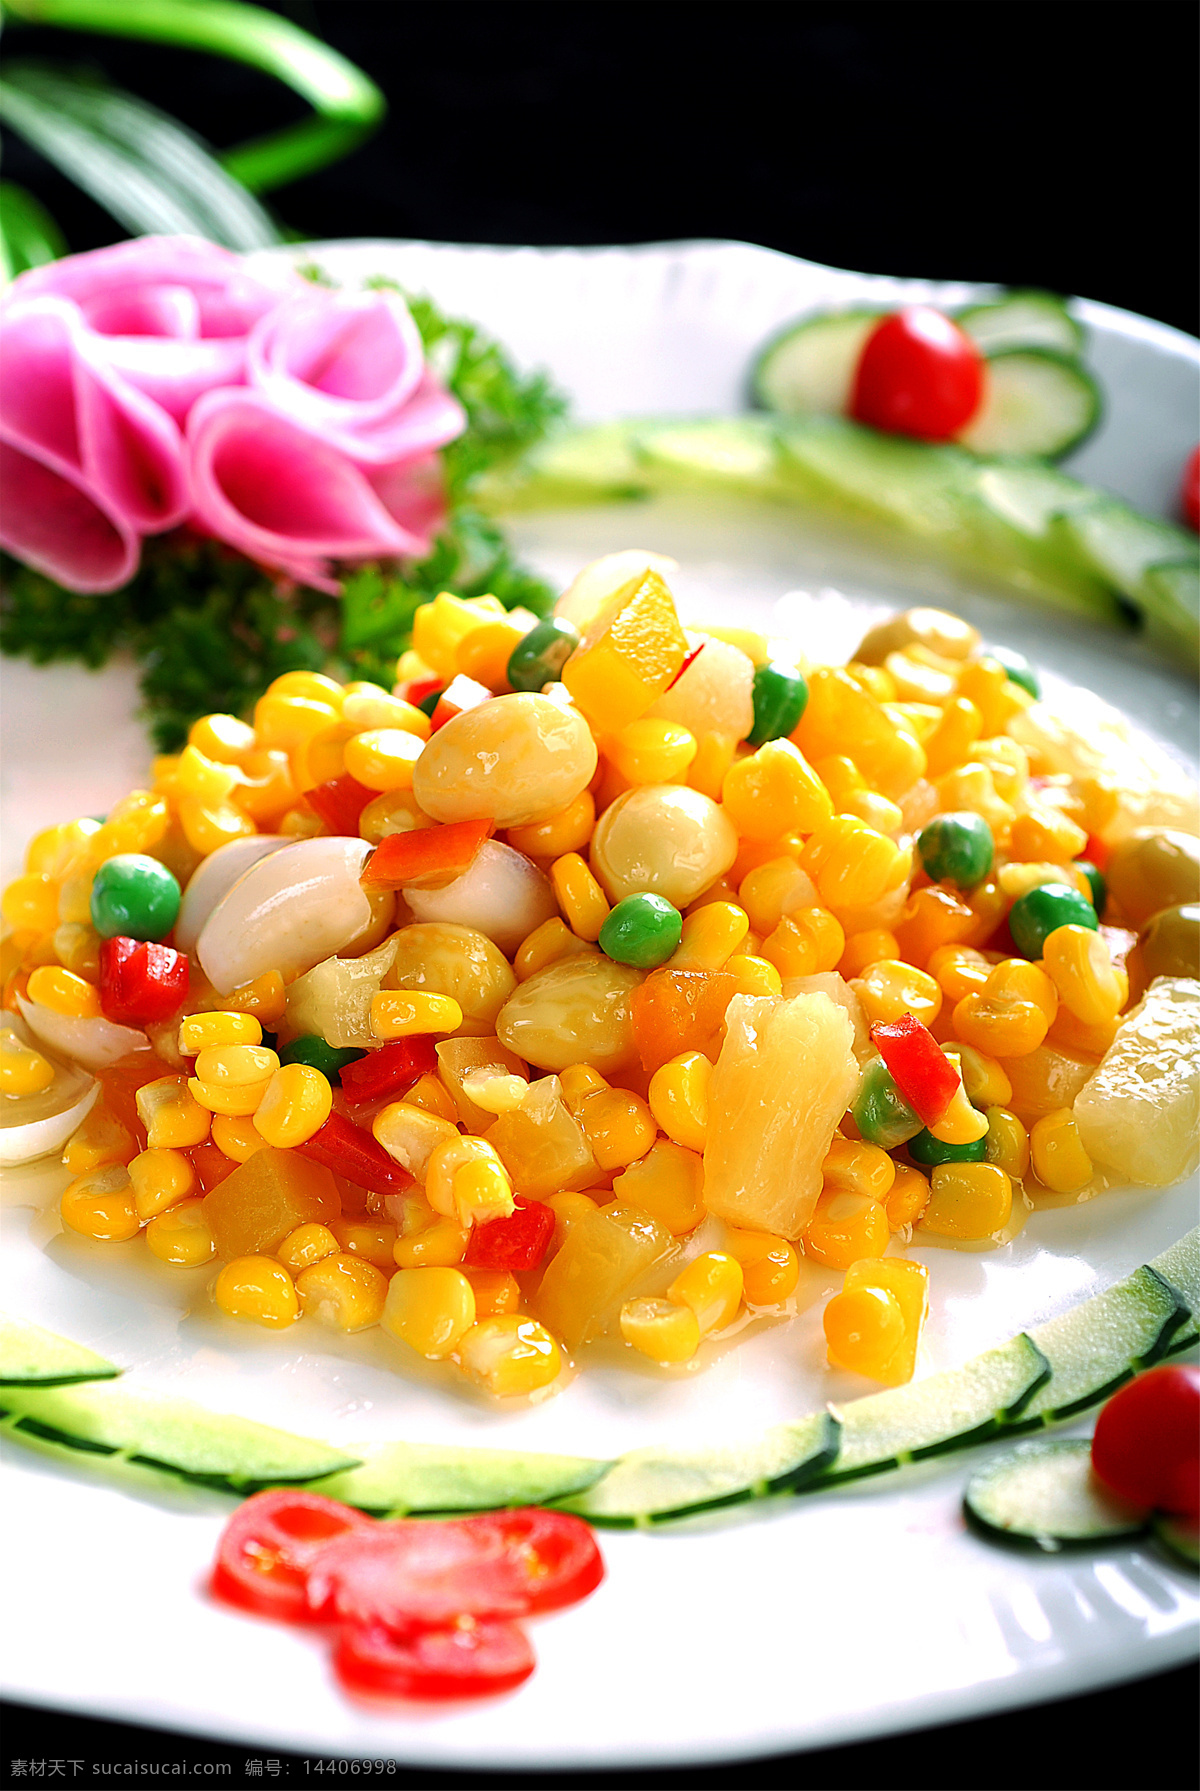 炒杂果炒玉米 美食 传统美食 餐饮美食 高清菜谱用图